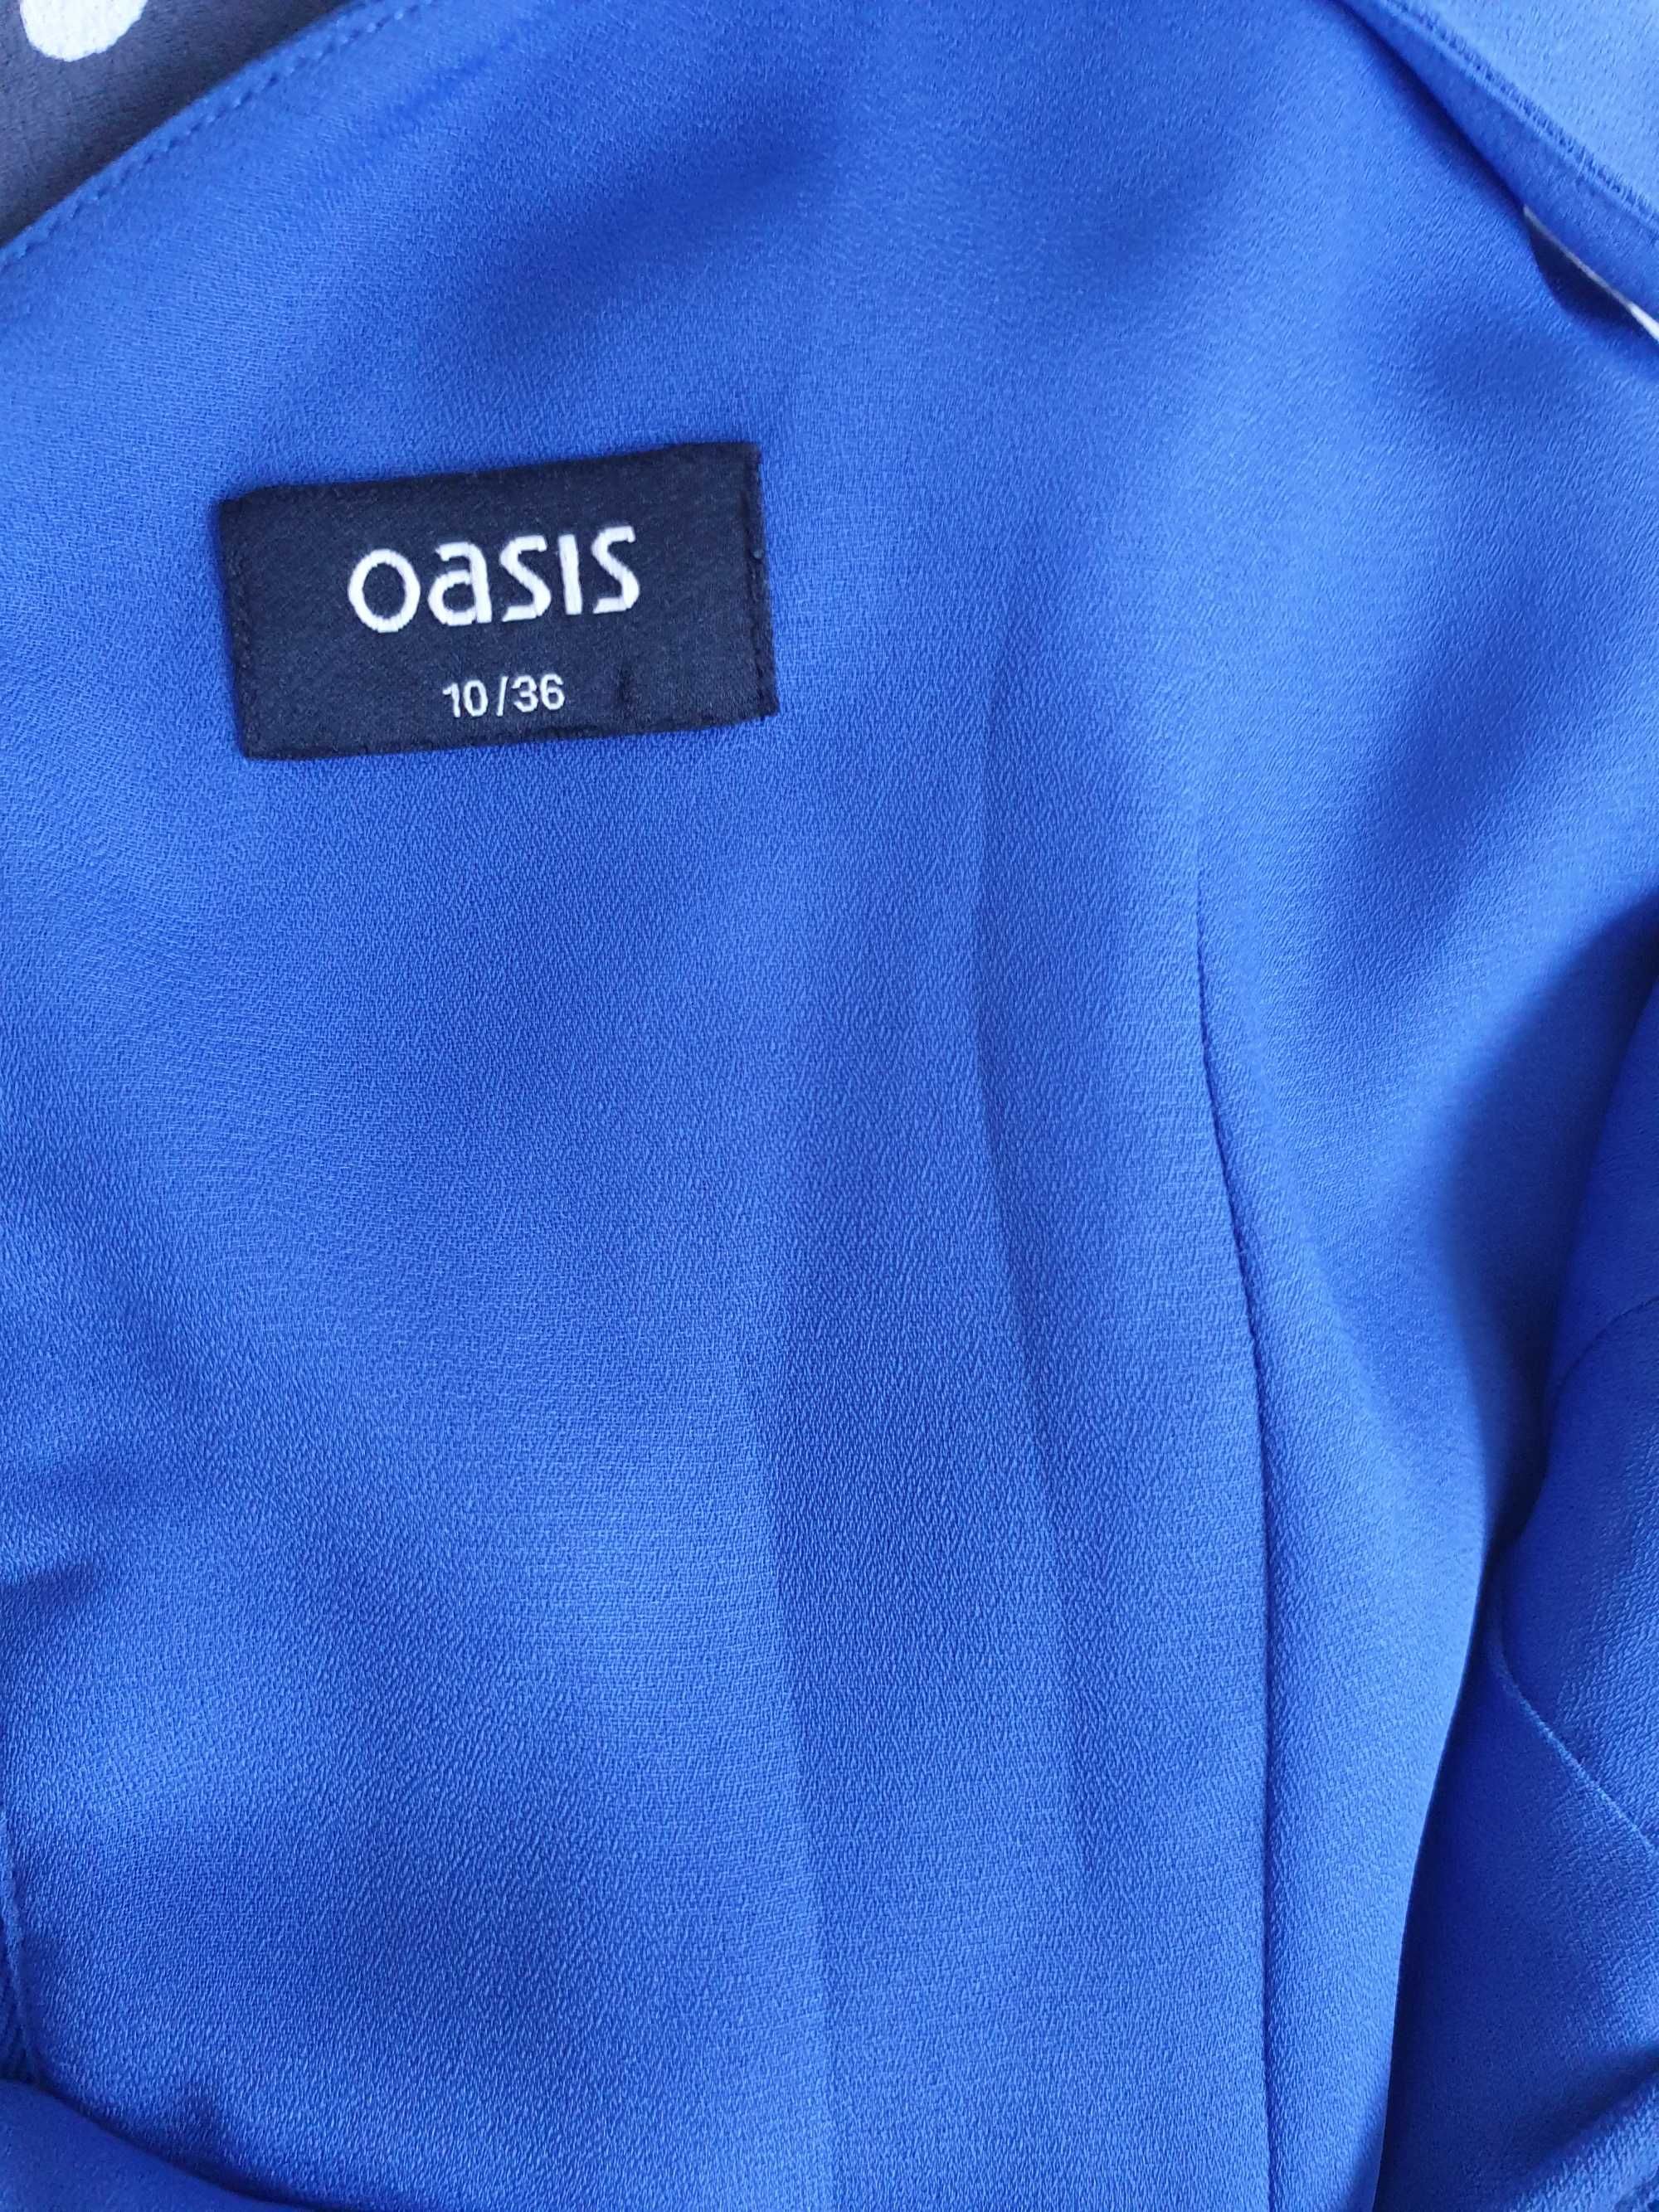 Oasis Niebieska Sukienka z Koronką Rozmiar 10 36